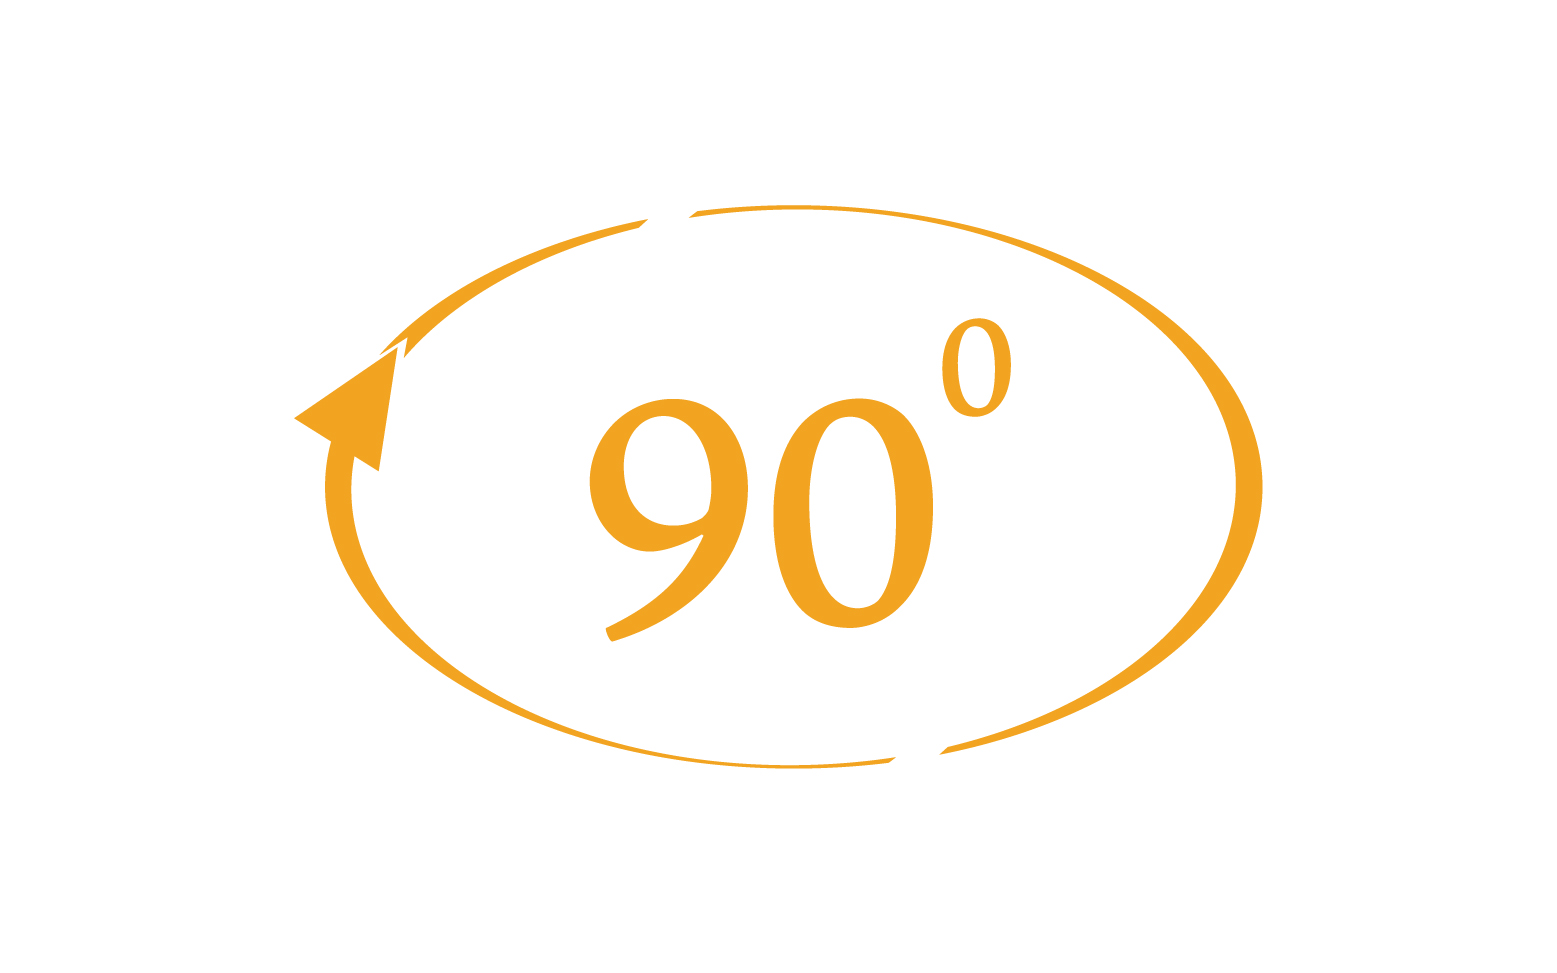 90 degree angle rotation icon symbol logo v34